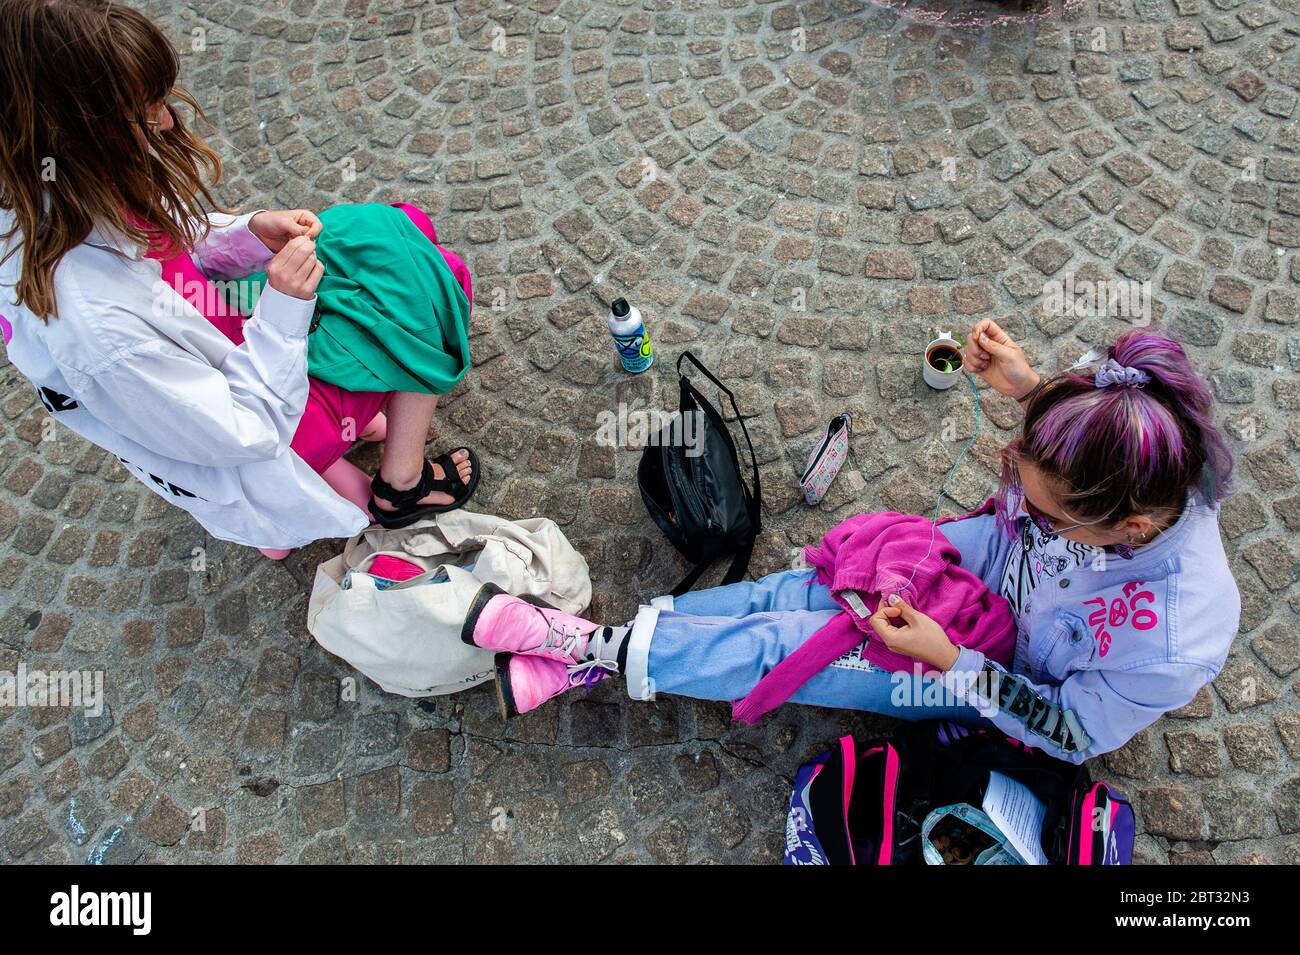 Eine Gruppe von Klimaaktivisten sieht man beim Nähen gebrauchter Kleidung,  während sie auf dem Boden sitzen.Extinction Rebellion Nederland  organisierte eine XR-Modeaktion, um eine Alternative zur rasanten Fast  Fashion-Industrie zu zeigen. Rund zwanzig